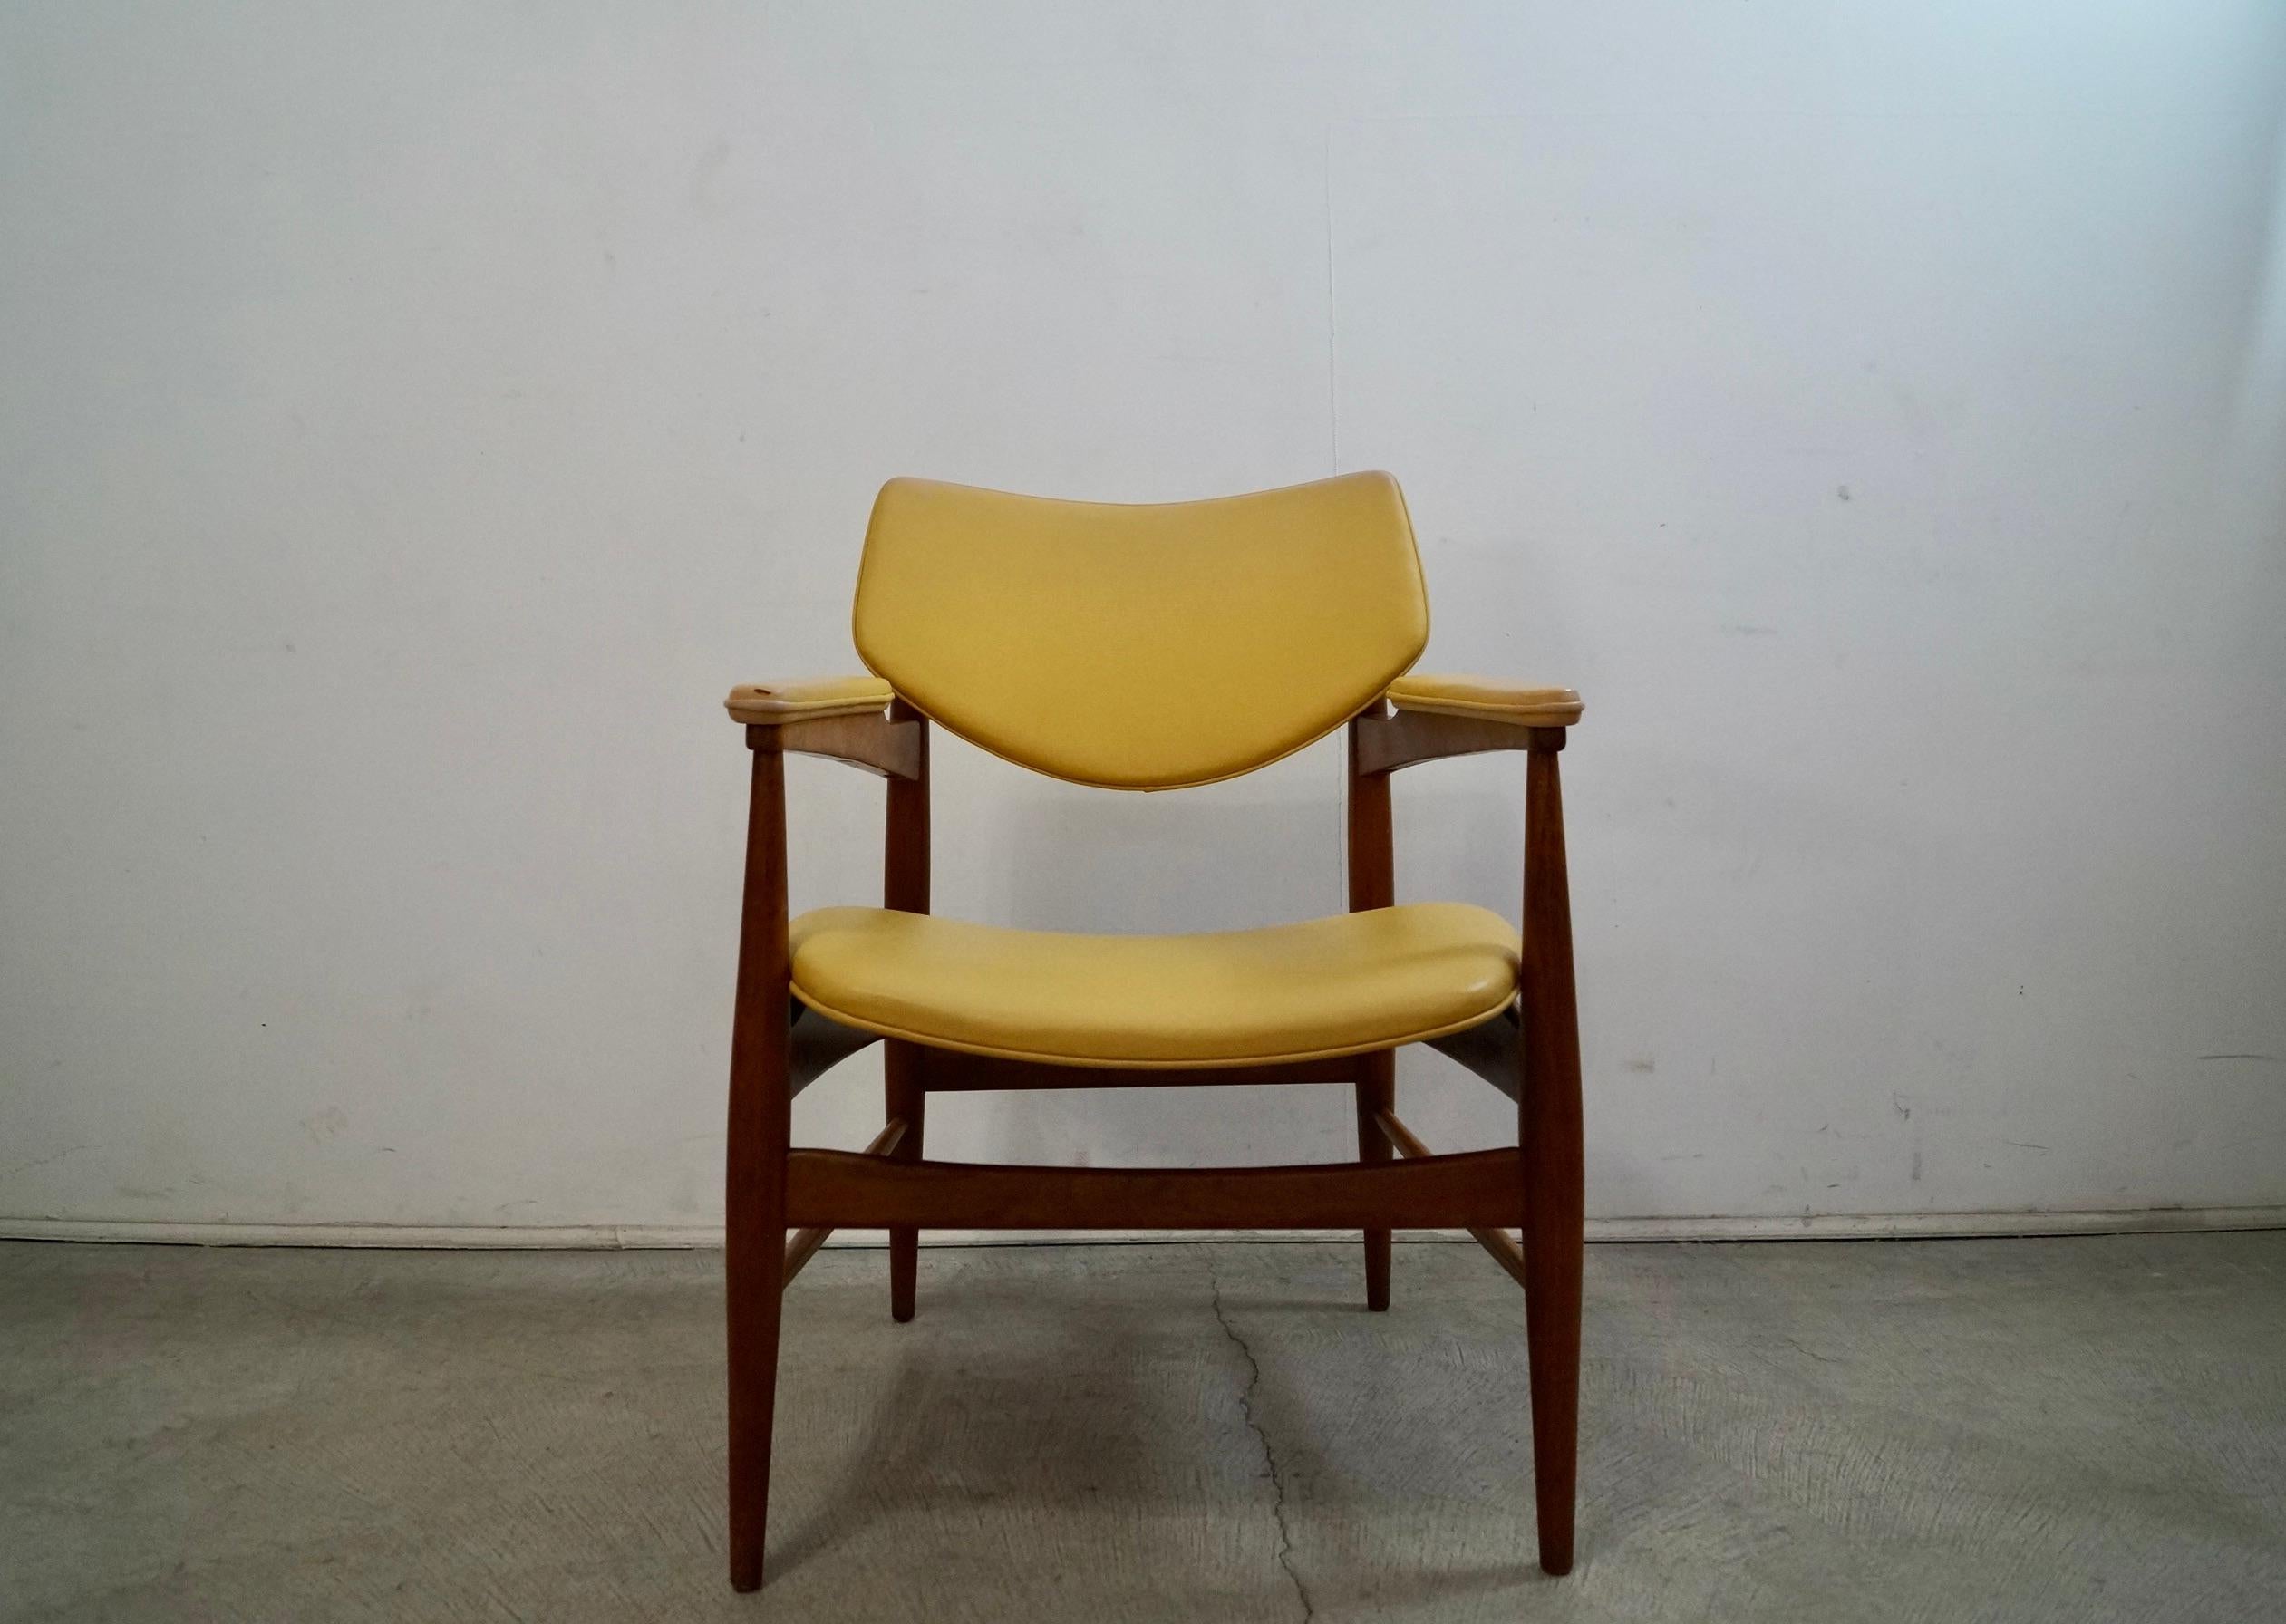 Vintage original Midcentury Modern Sessel zu verkaufen. Hergestellt in den 1950er Jahren von Thonet, und hat immer noch die ursprüngliche Tag schön intakt. Es hat die ursprüngliche Naugahyde-Vinyl-Polsterung in gelb und zeigt einige Vintage